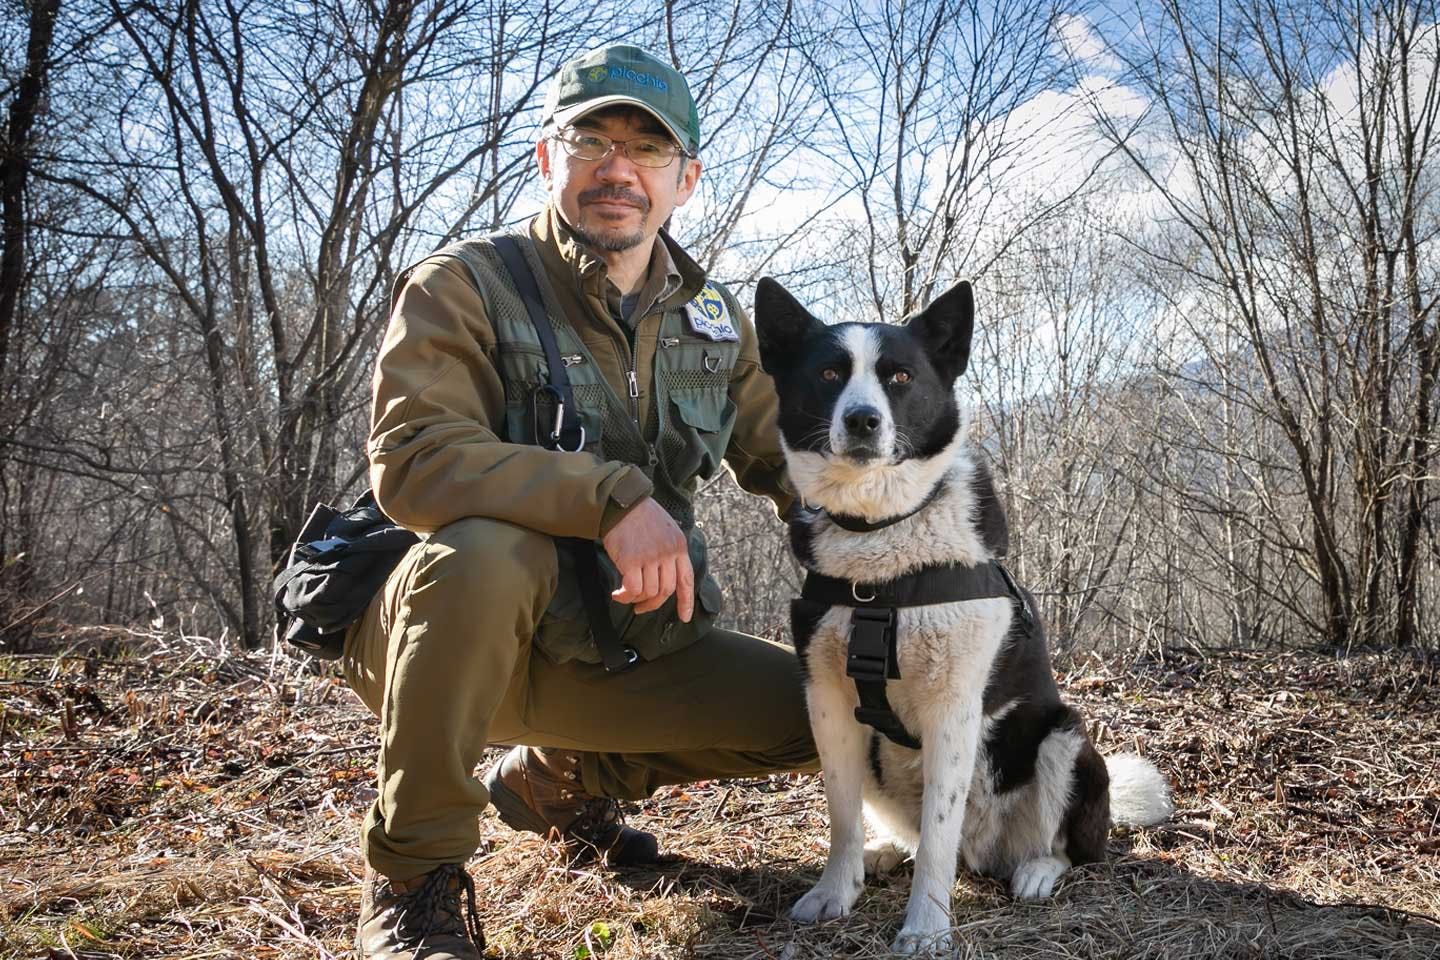 「クマ対策には犬が不可欠」人間と野生動物の共存を目指す、ピッキオのベアドッグ・ハンドラー田中純平さんの日本初の取り組み